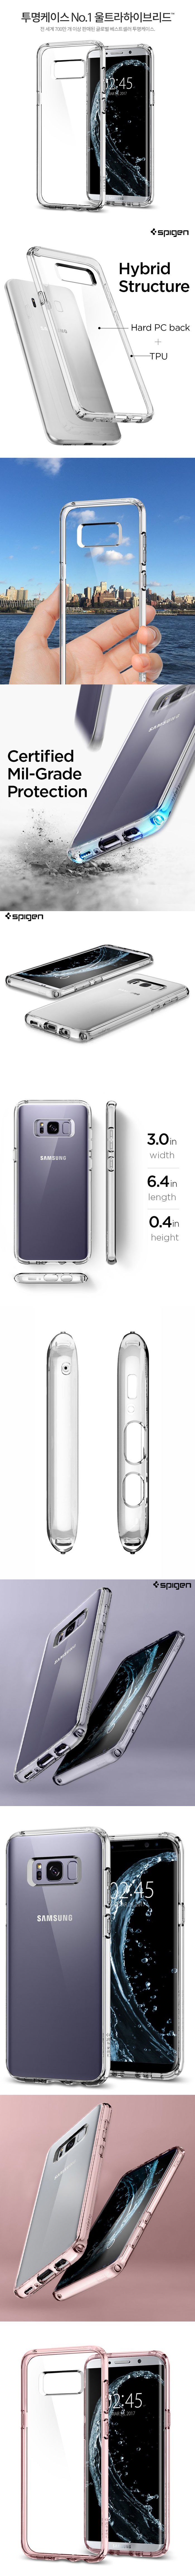 Ốp lưng Samsung Galaxy S8 Plus, Bao da Galaxy S8 Plus  cao cấp nhất Việt Nam Op-lung-galaxy-s8-plus-spigen-ultra-crystal-trong-suot-chong-soc-usa-17